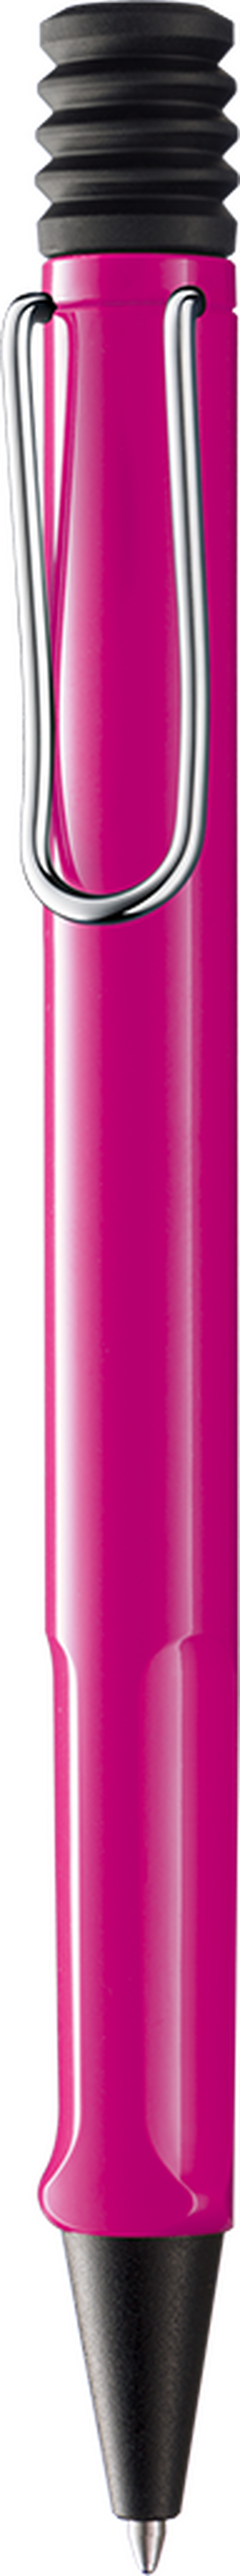 Kugelschreiber LAMY safari pink M-blau